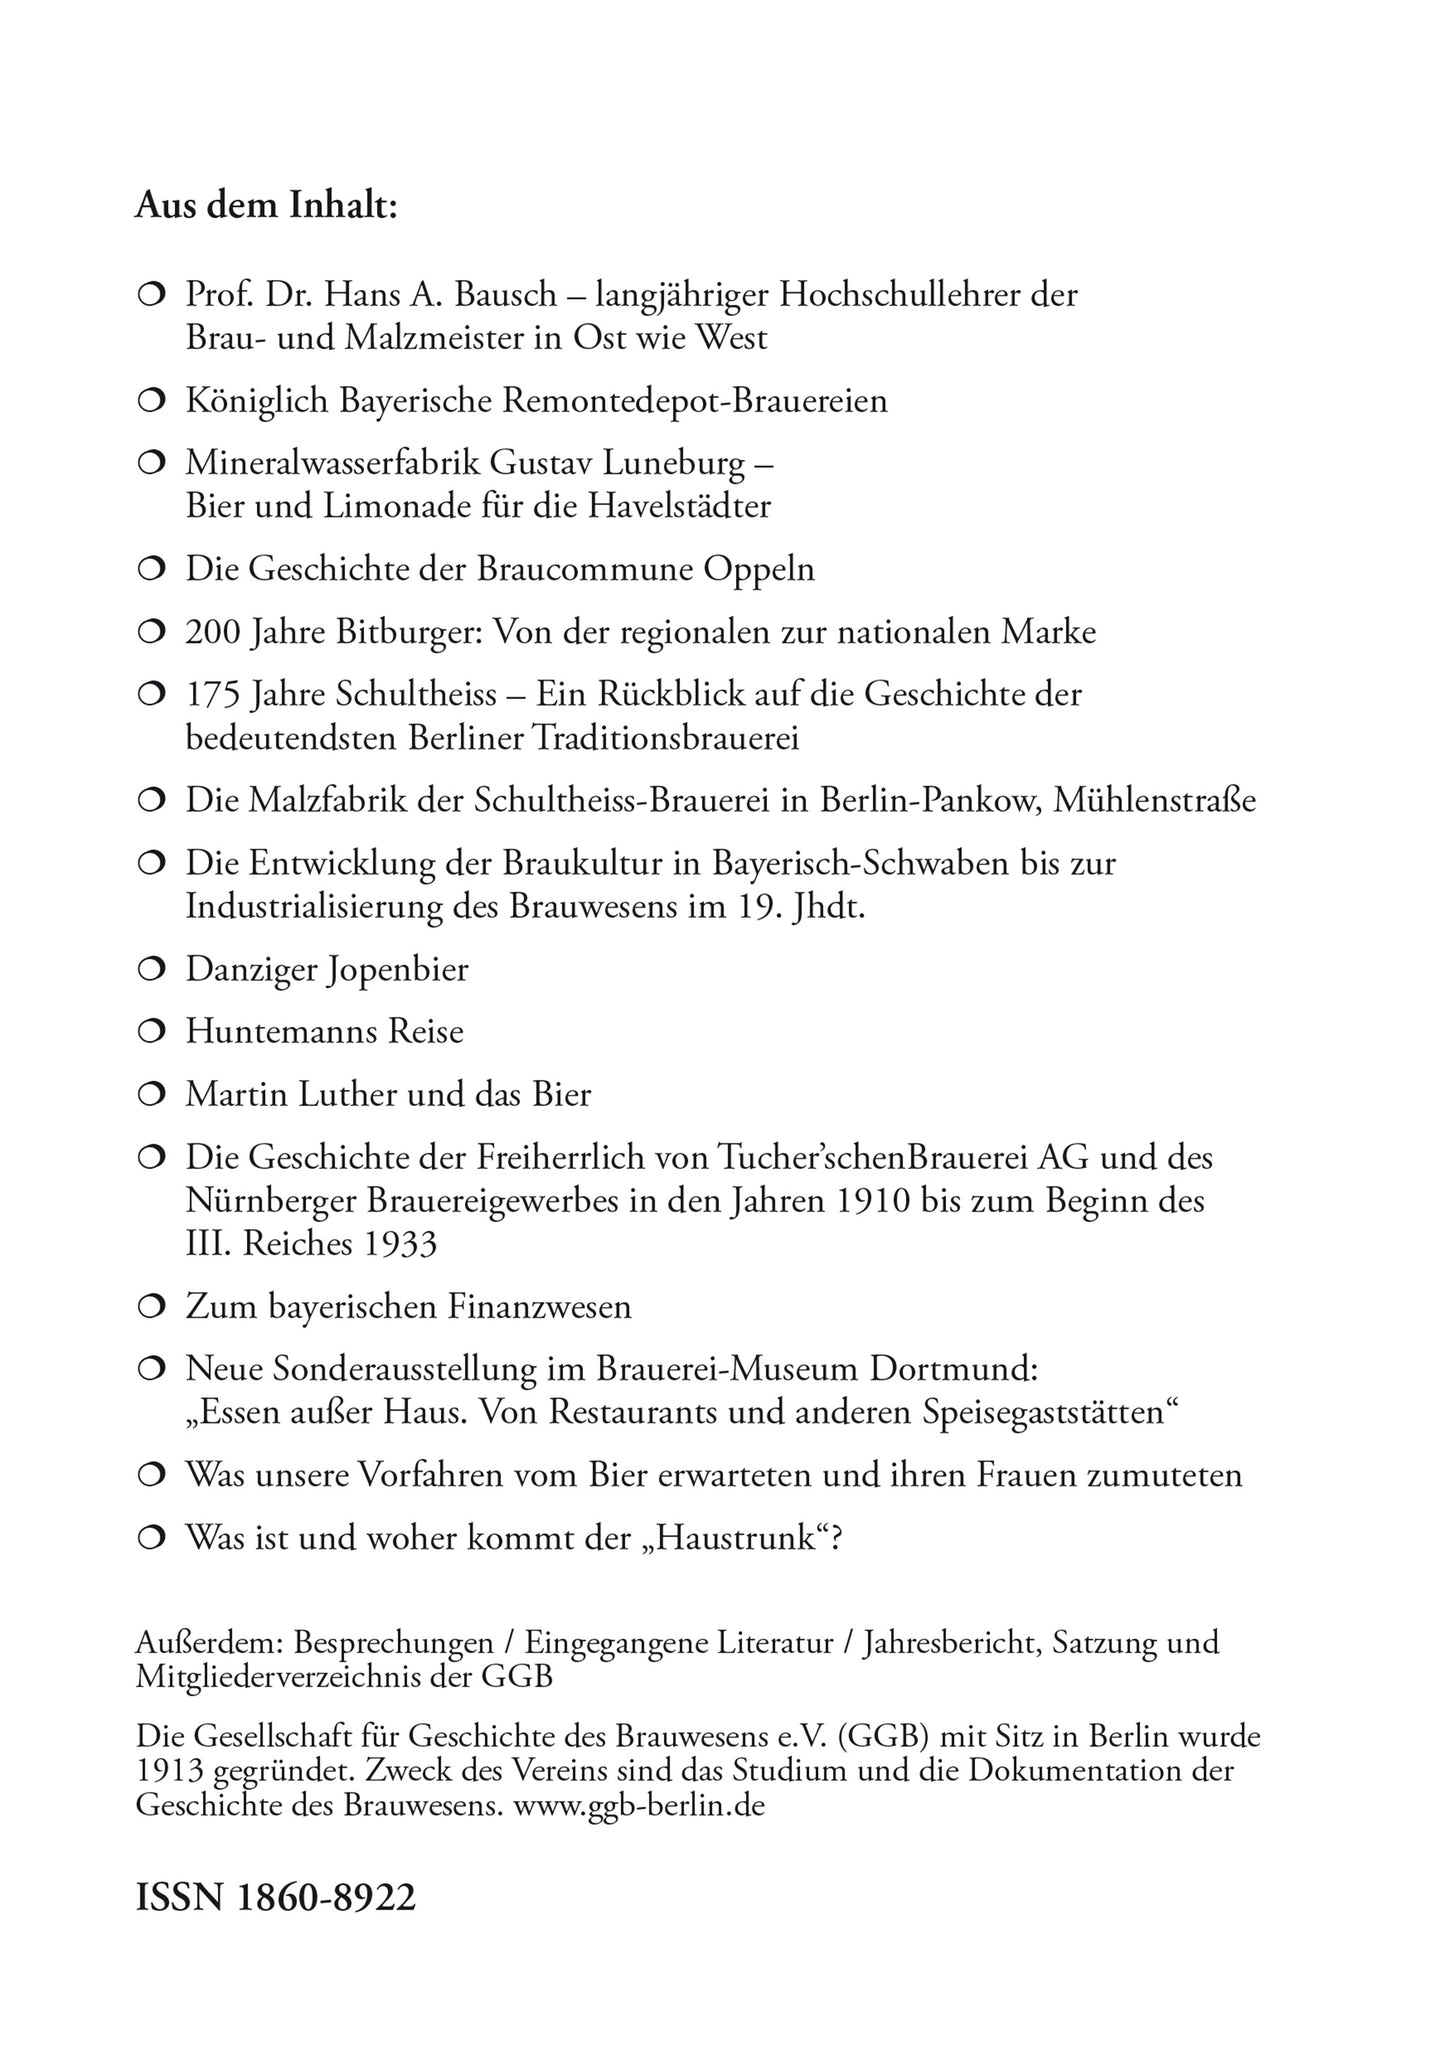 Jahrbuch 2017 der Gesellschaft für Geschichte des Brauwesens e.V. (GGB)